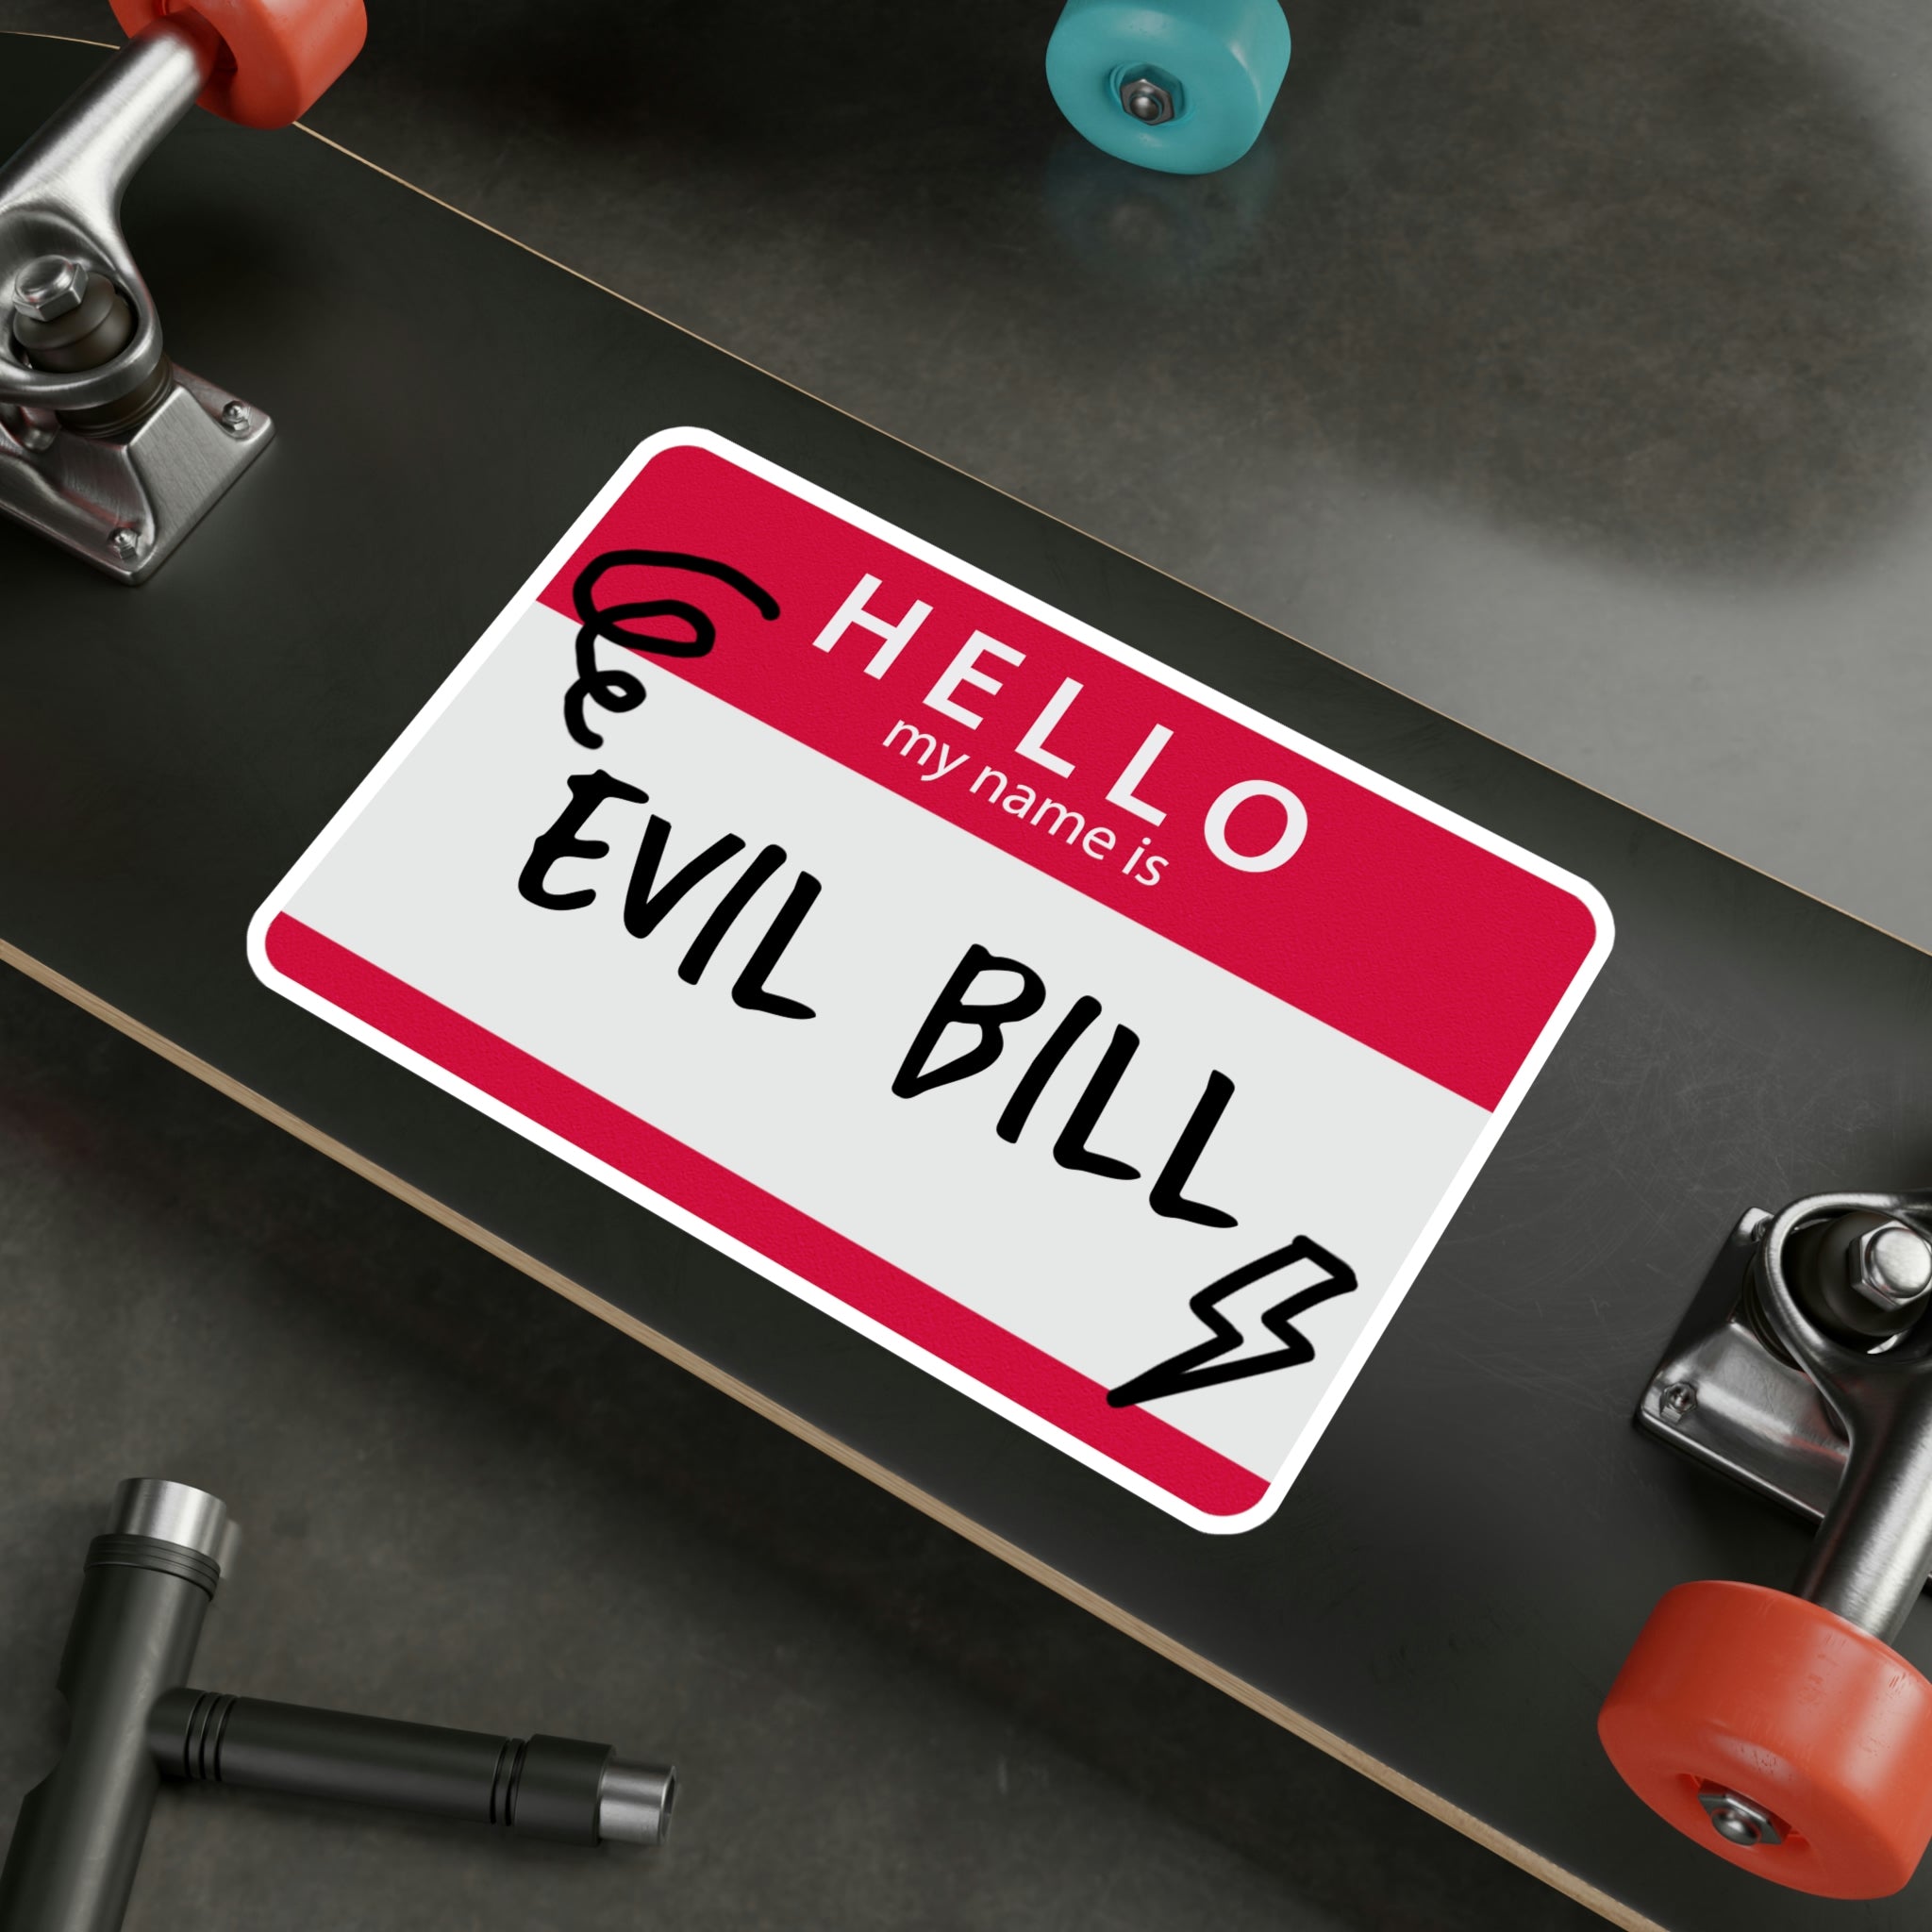 Evil Bill Vinyl Decal 